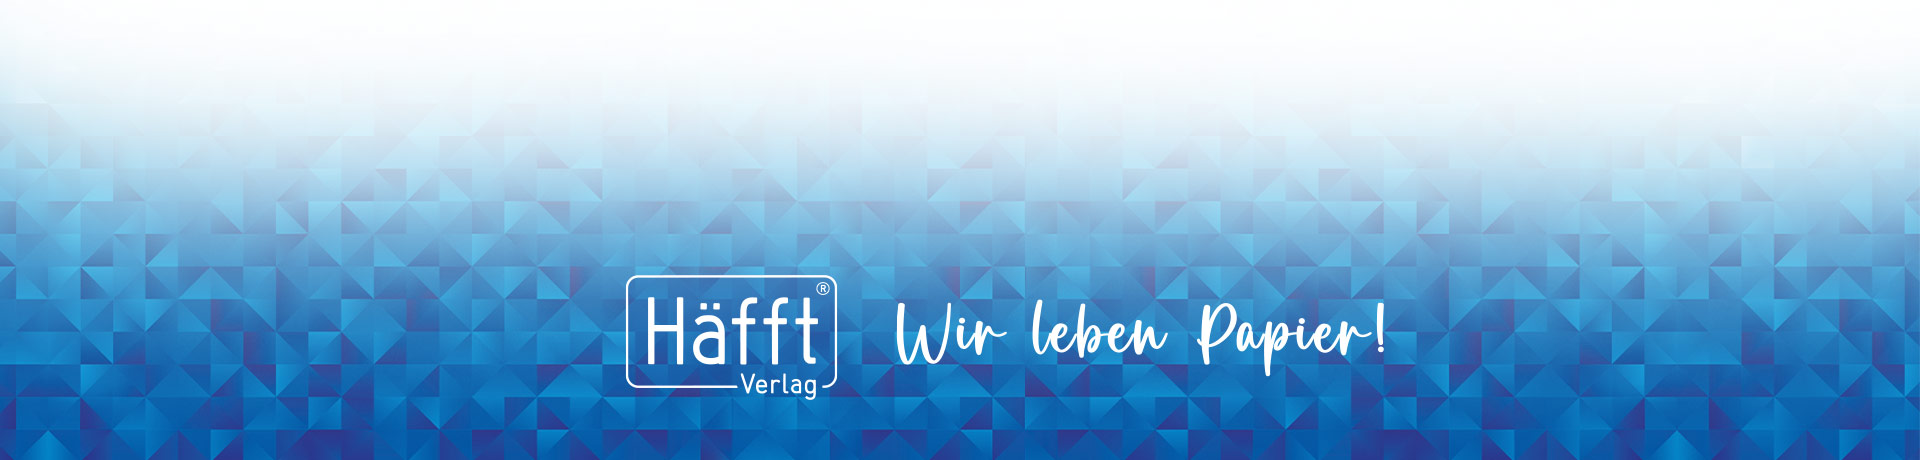 Lotterer GmbH & Co. KG. Häfft Aufgabenheft A5 pur